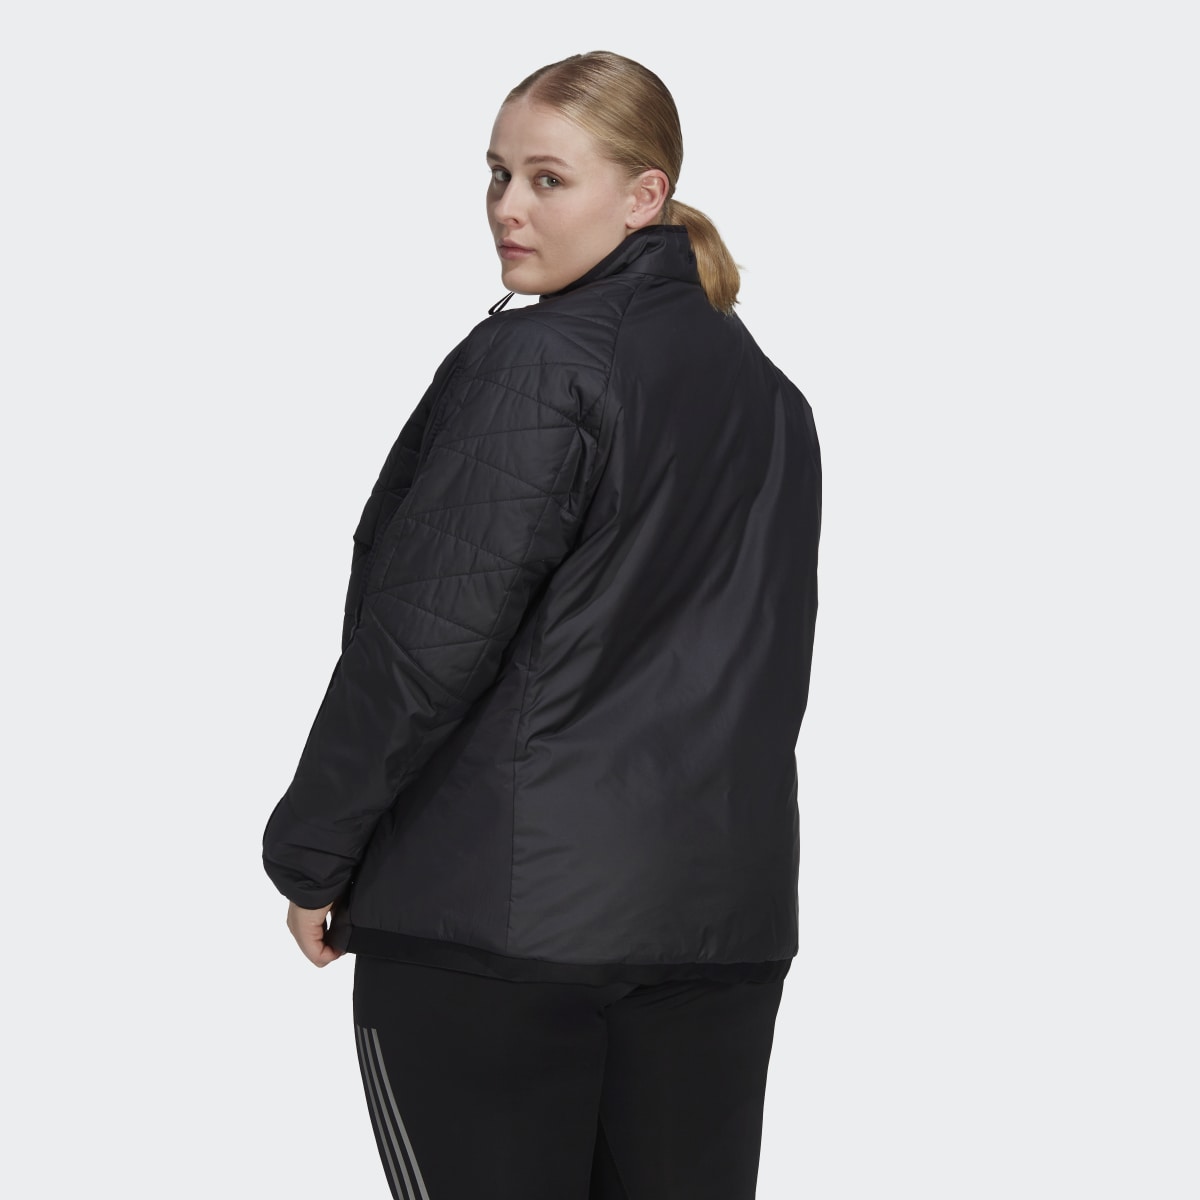 Adidas TERREX Multi Insulated Jacke – Große Größen. 4